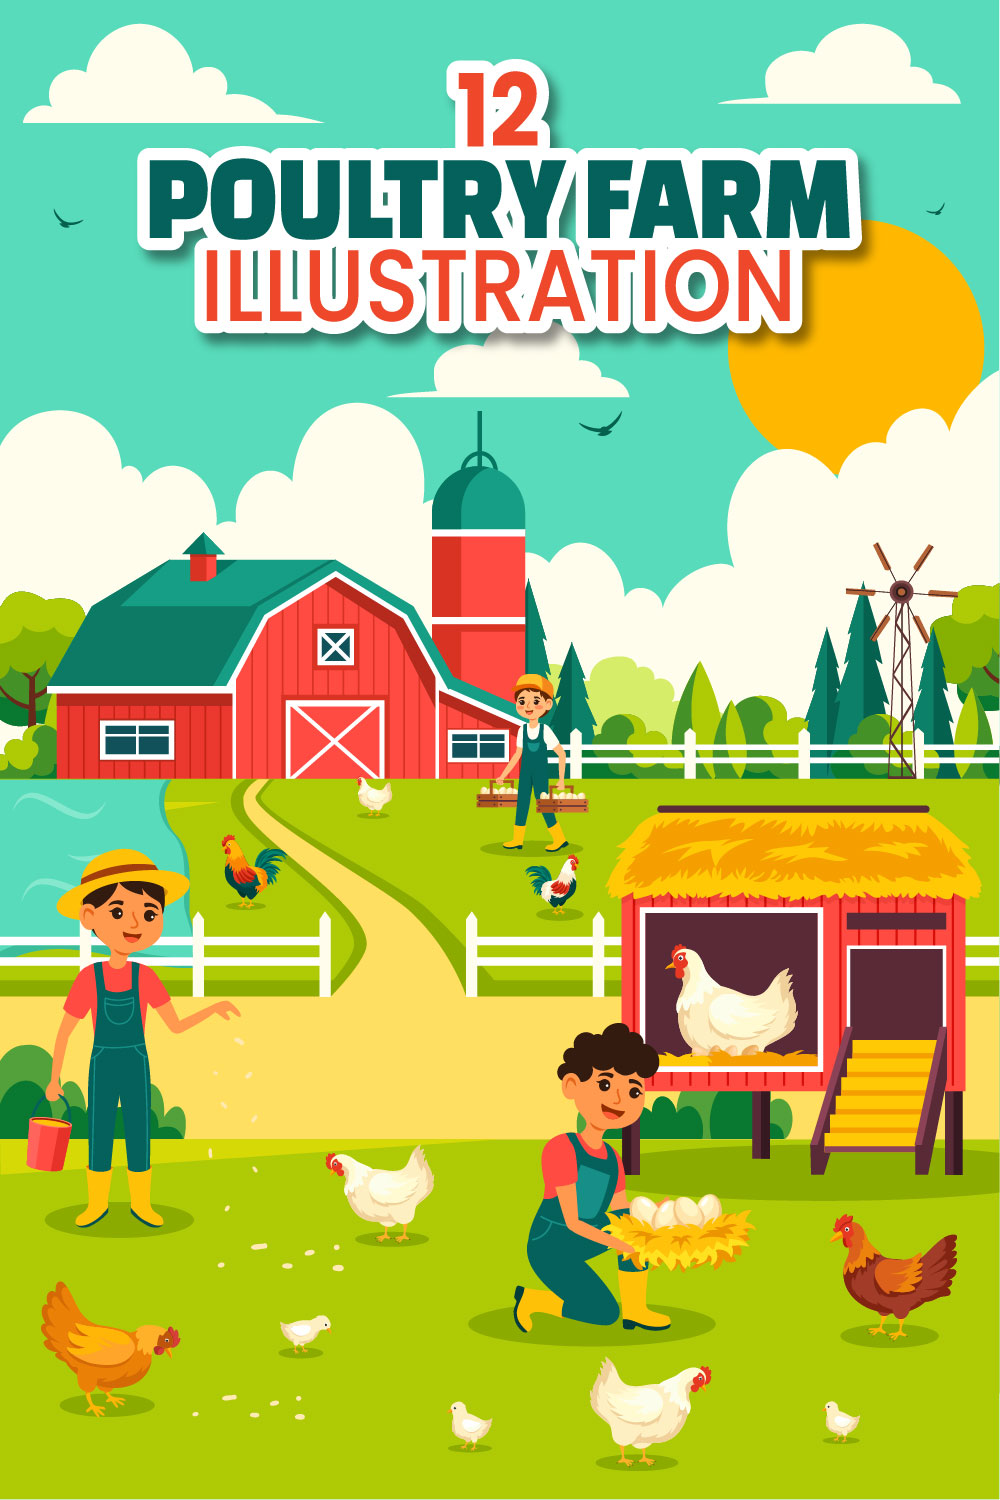 12 Poultry Farm Illustration pinterest preview image.